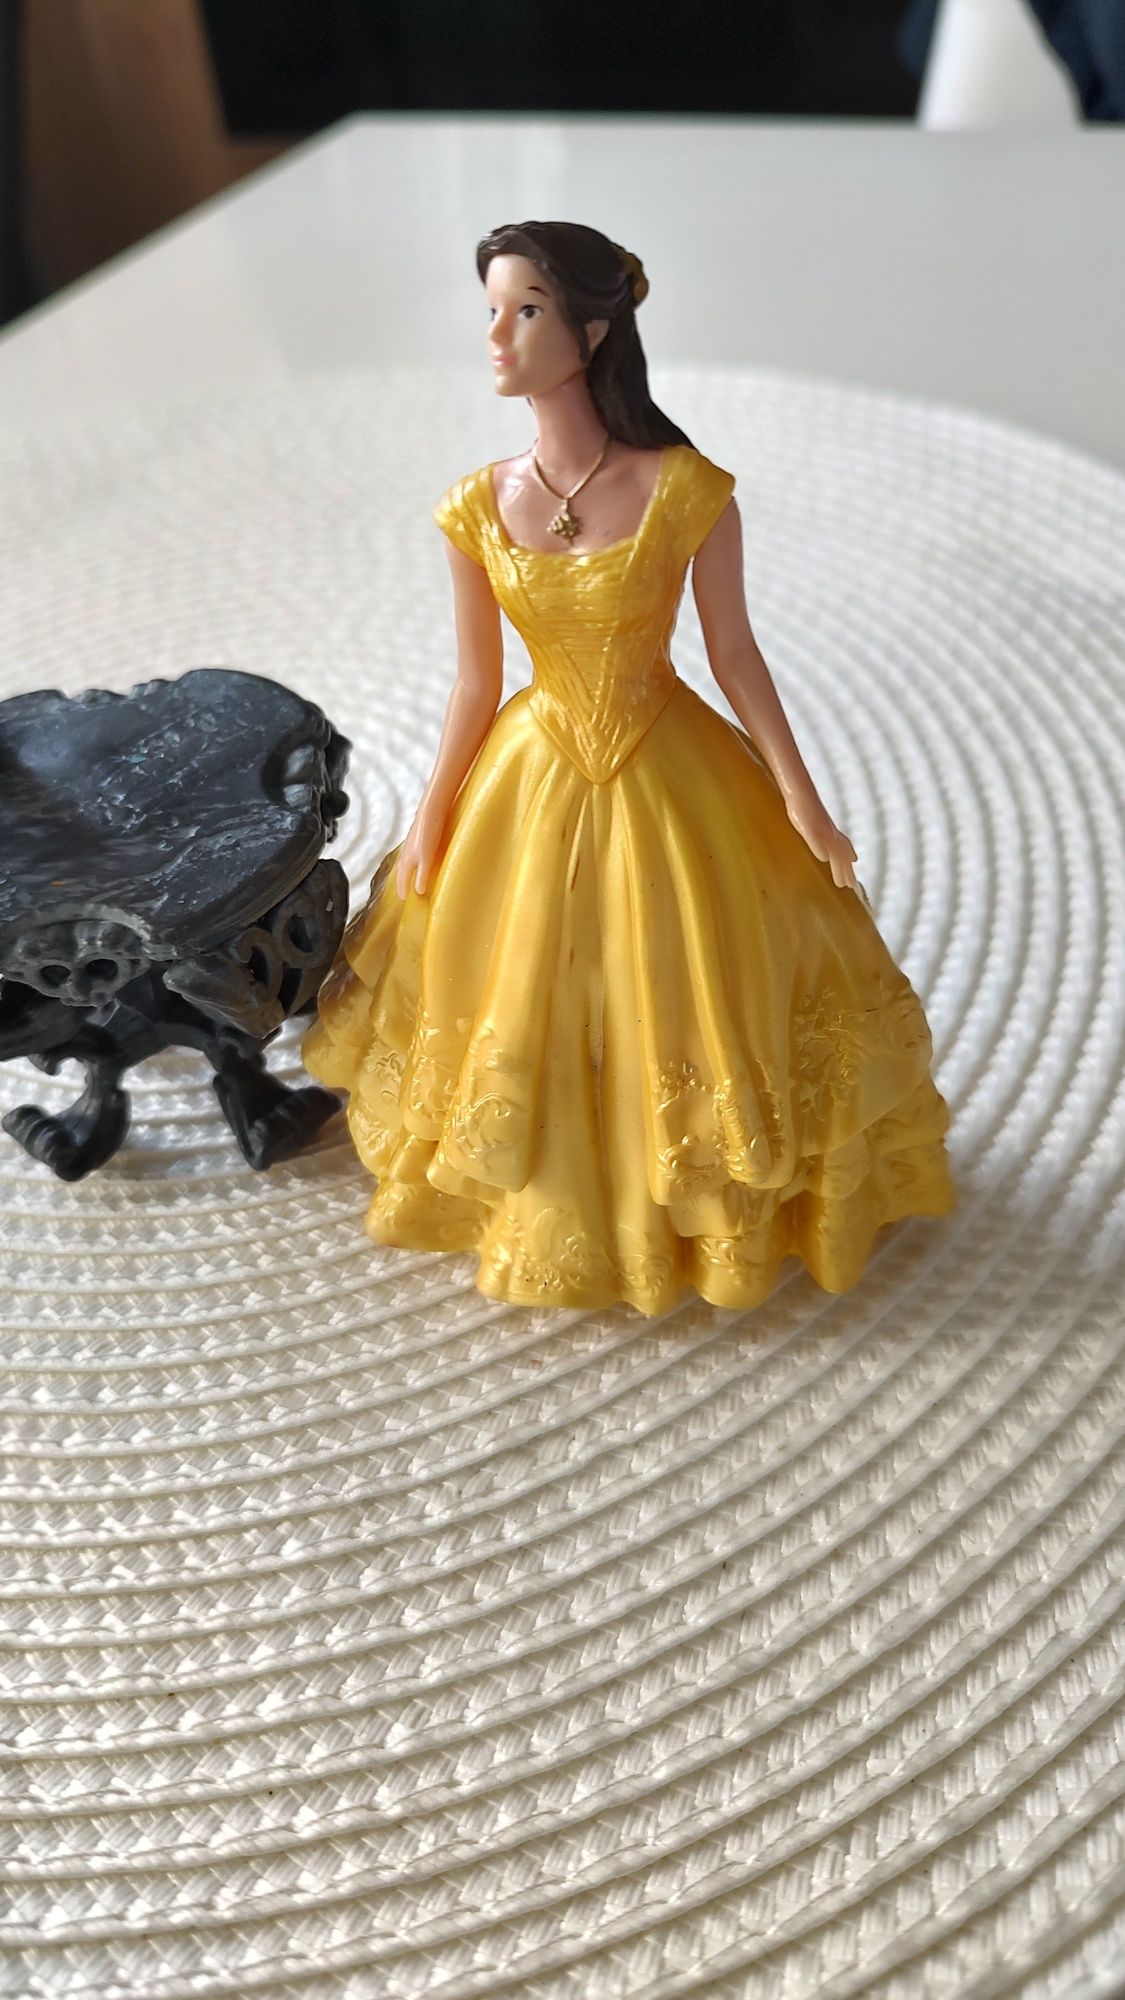 Belle și Bestia în miniatură